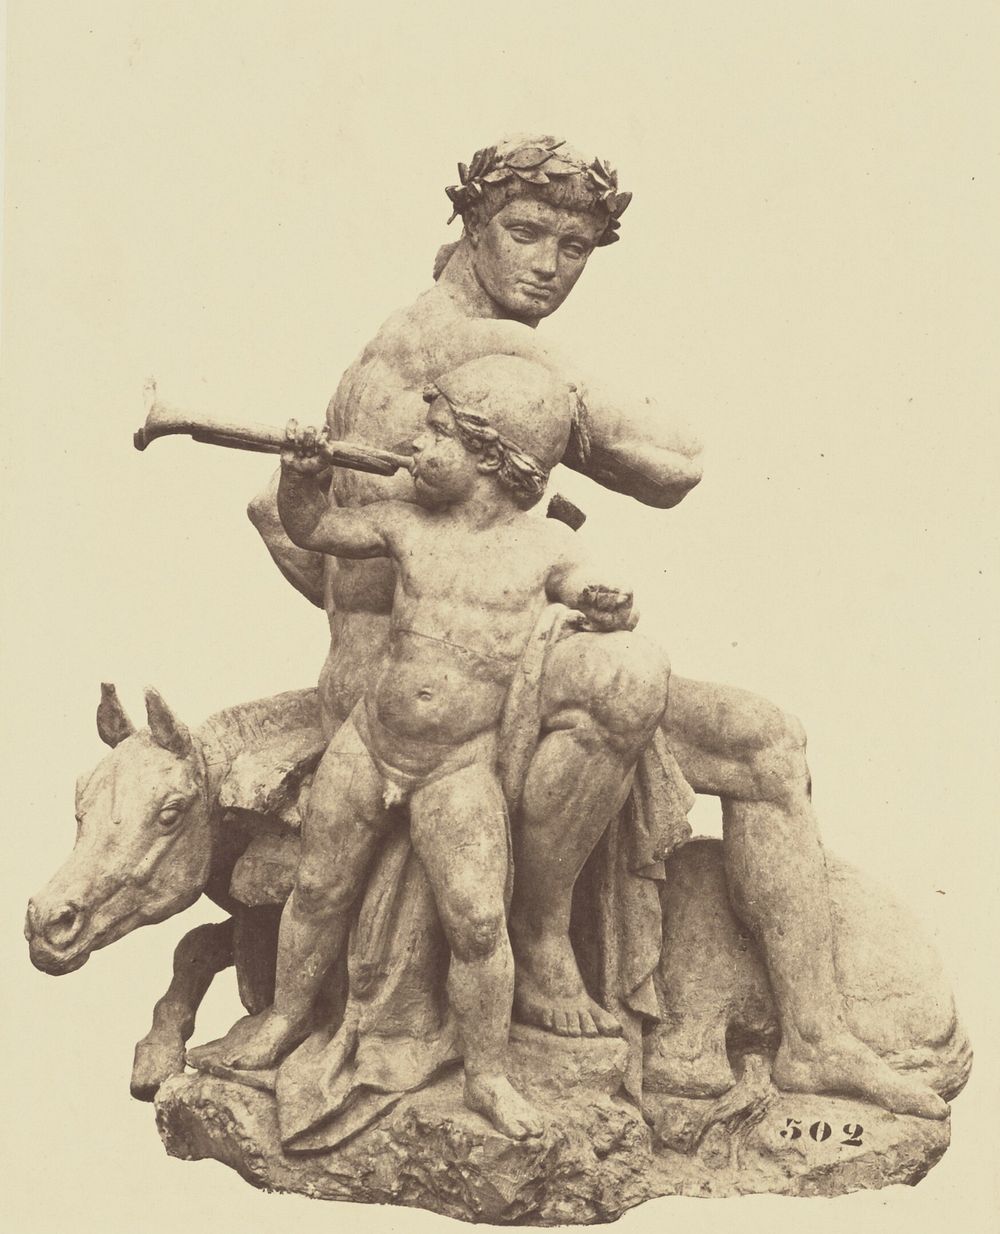 "La Victoire", Sculpture by Antoine-Louis Barye, Decoration of the Louvre, Paris by Édouard Baldus